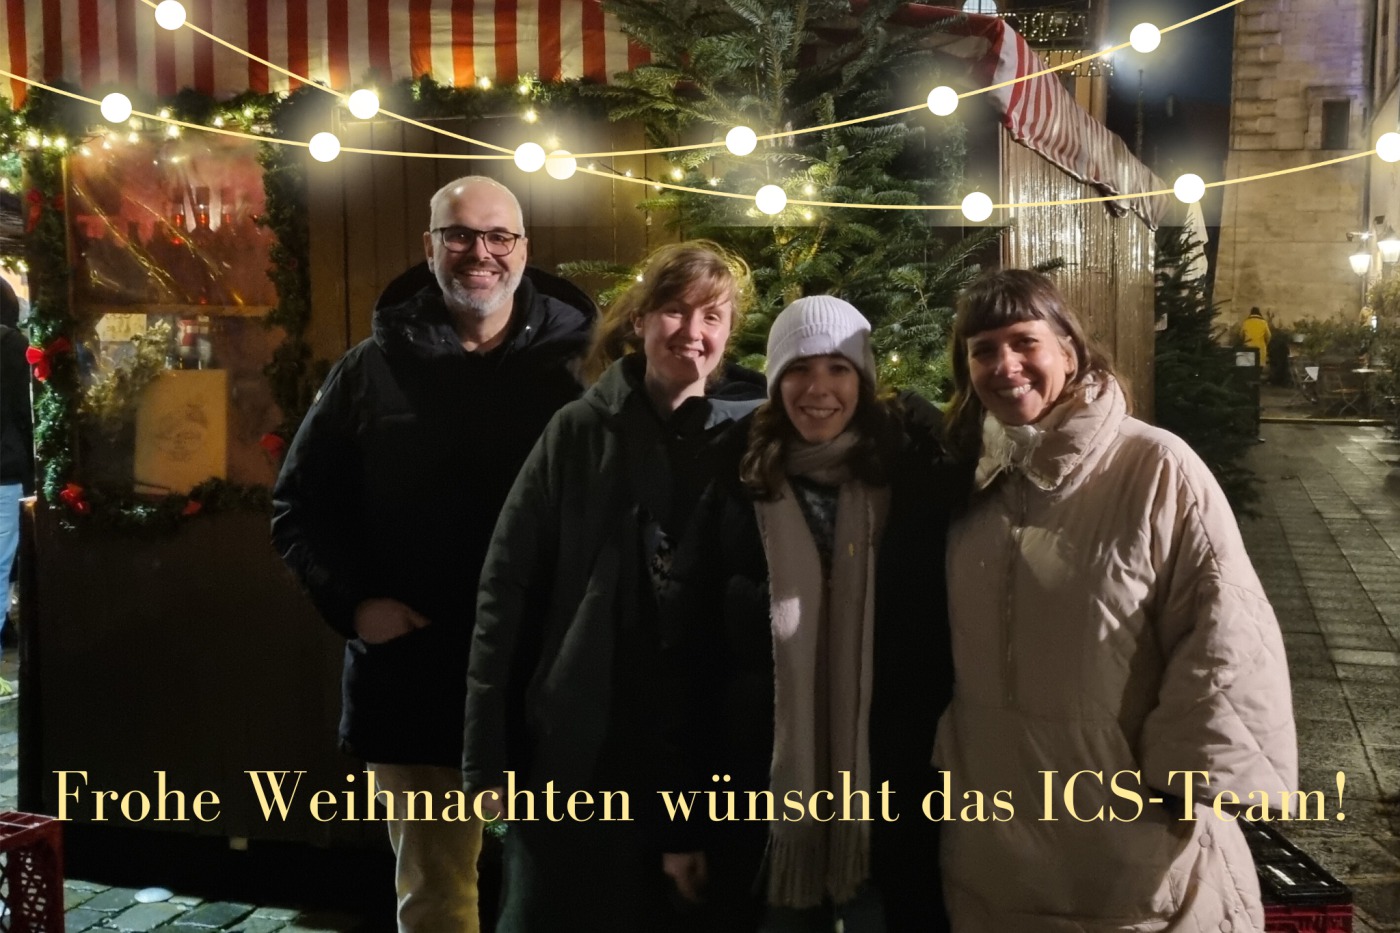 Das ICS-Team wünscht frohe Weihnachten!